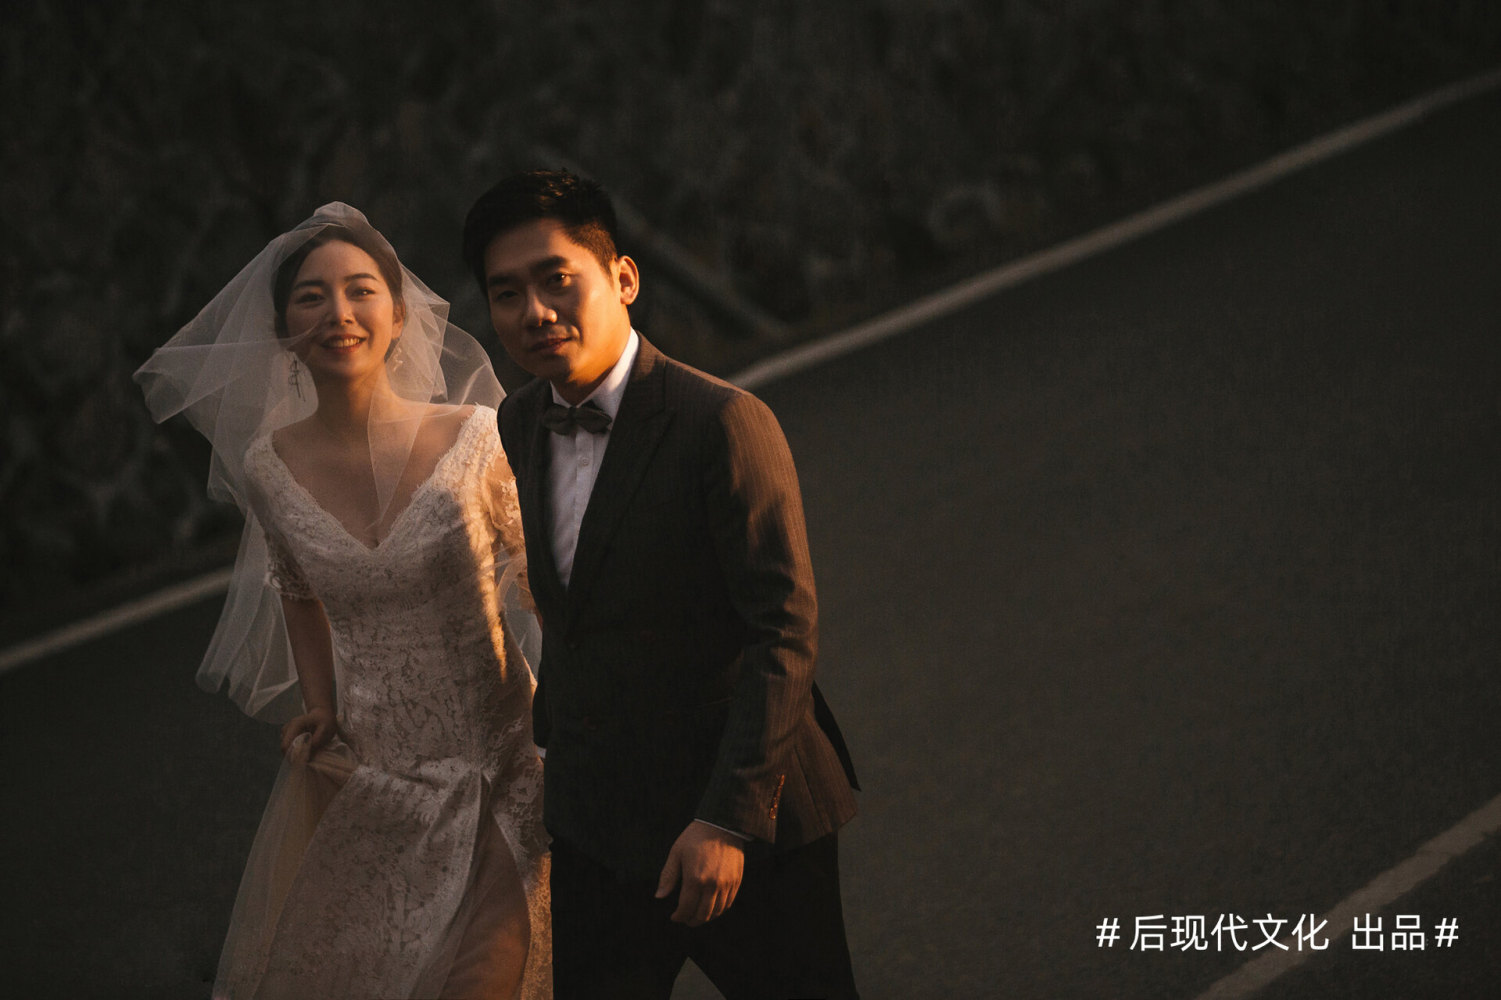 福州婚纱摄影 (2)